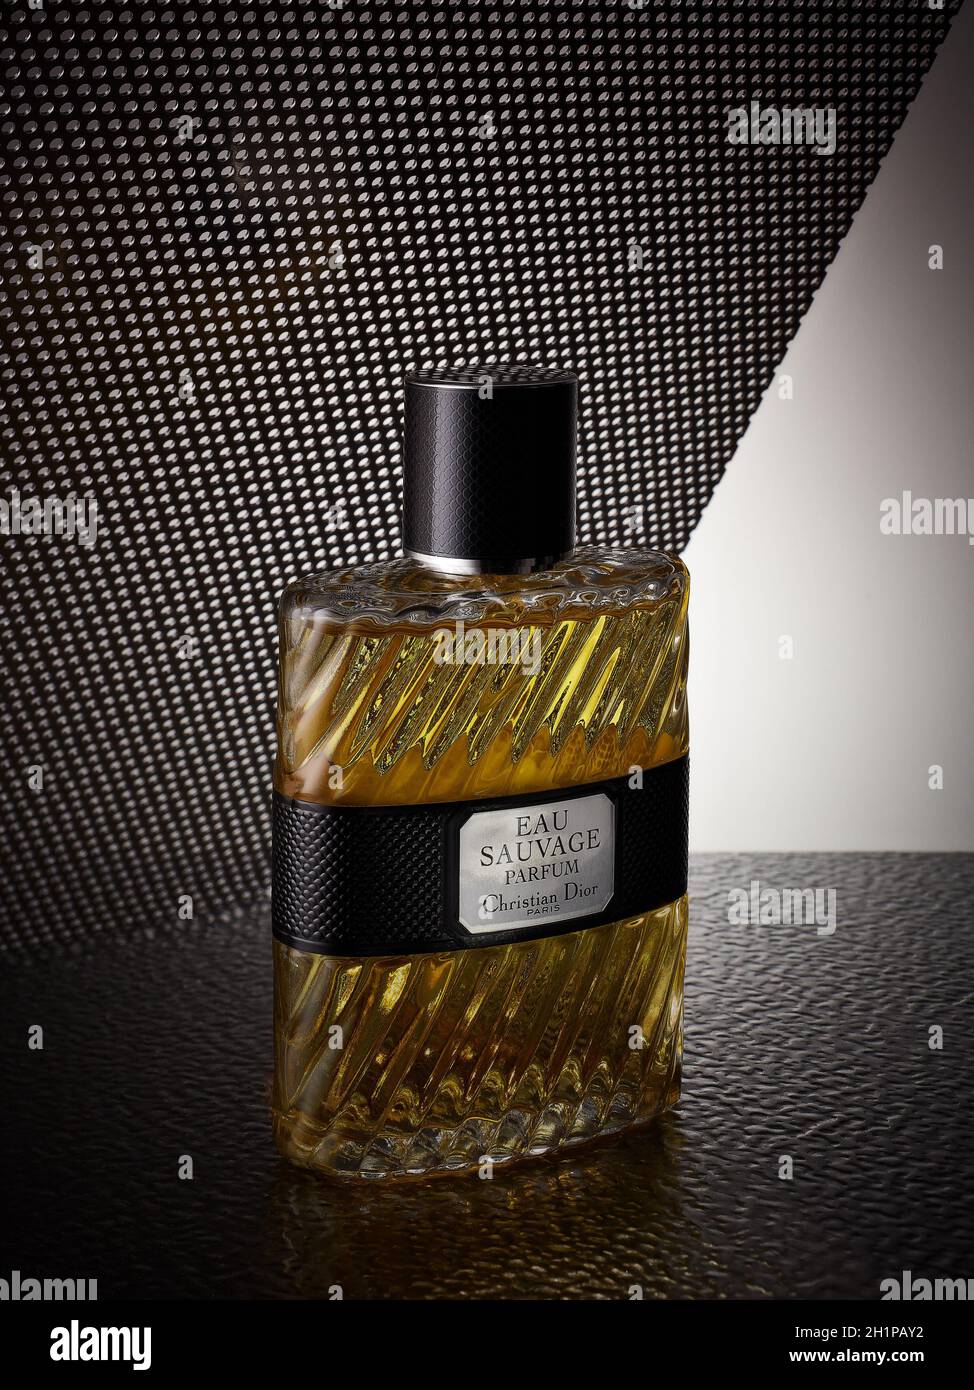 Saint-Pétersbourg, Russie - Mars 2020 - bouteille de cologne eau sauvage  parfum.Produit de Christian Dior Photo Stock - Alamy